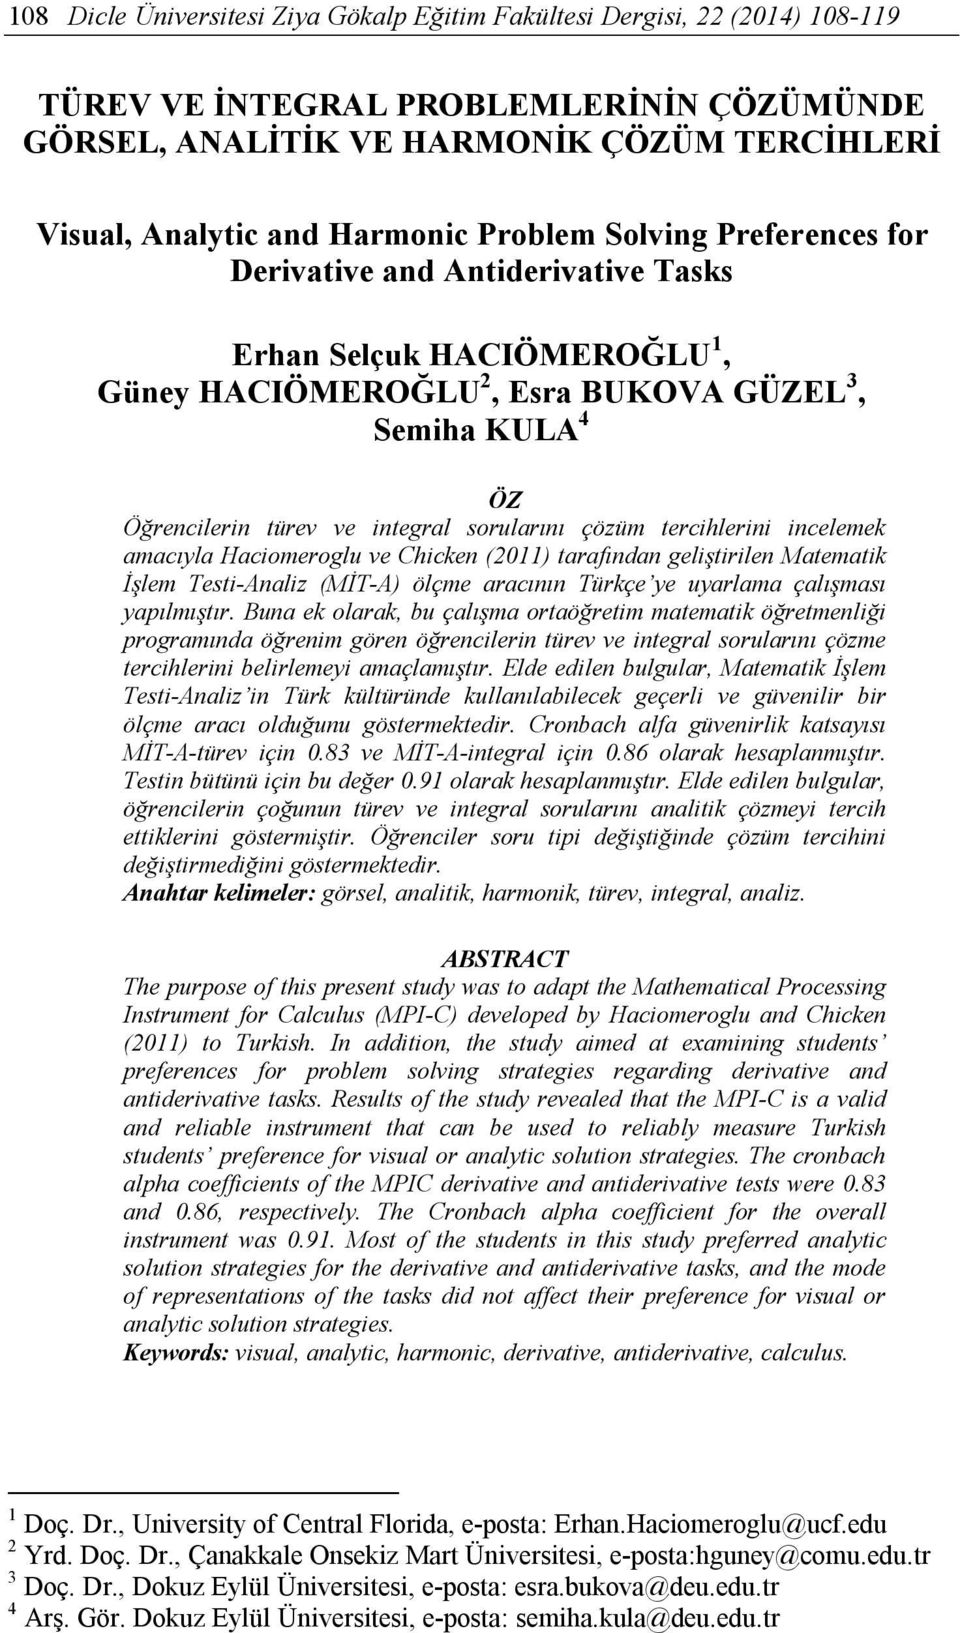 çözüm tercihlerini incelemek amacıyla Haciomeroglu ve Chicken (2011) tarafından geliştirilen Matematik İşlem Testi-Analiz (MİT-A) ölçme aracının Türkçe ye uyarlama çalışması yapılmıştır.